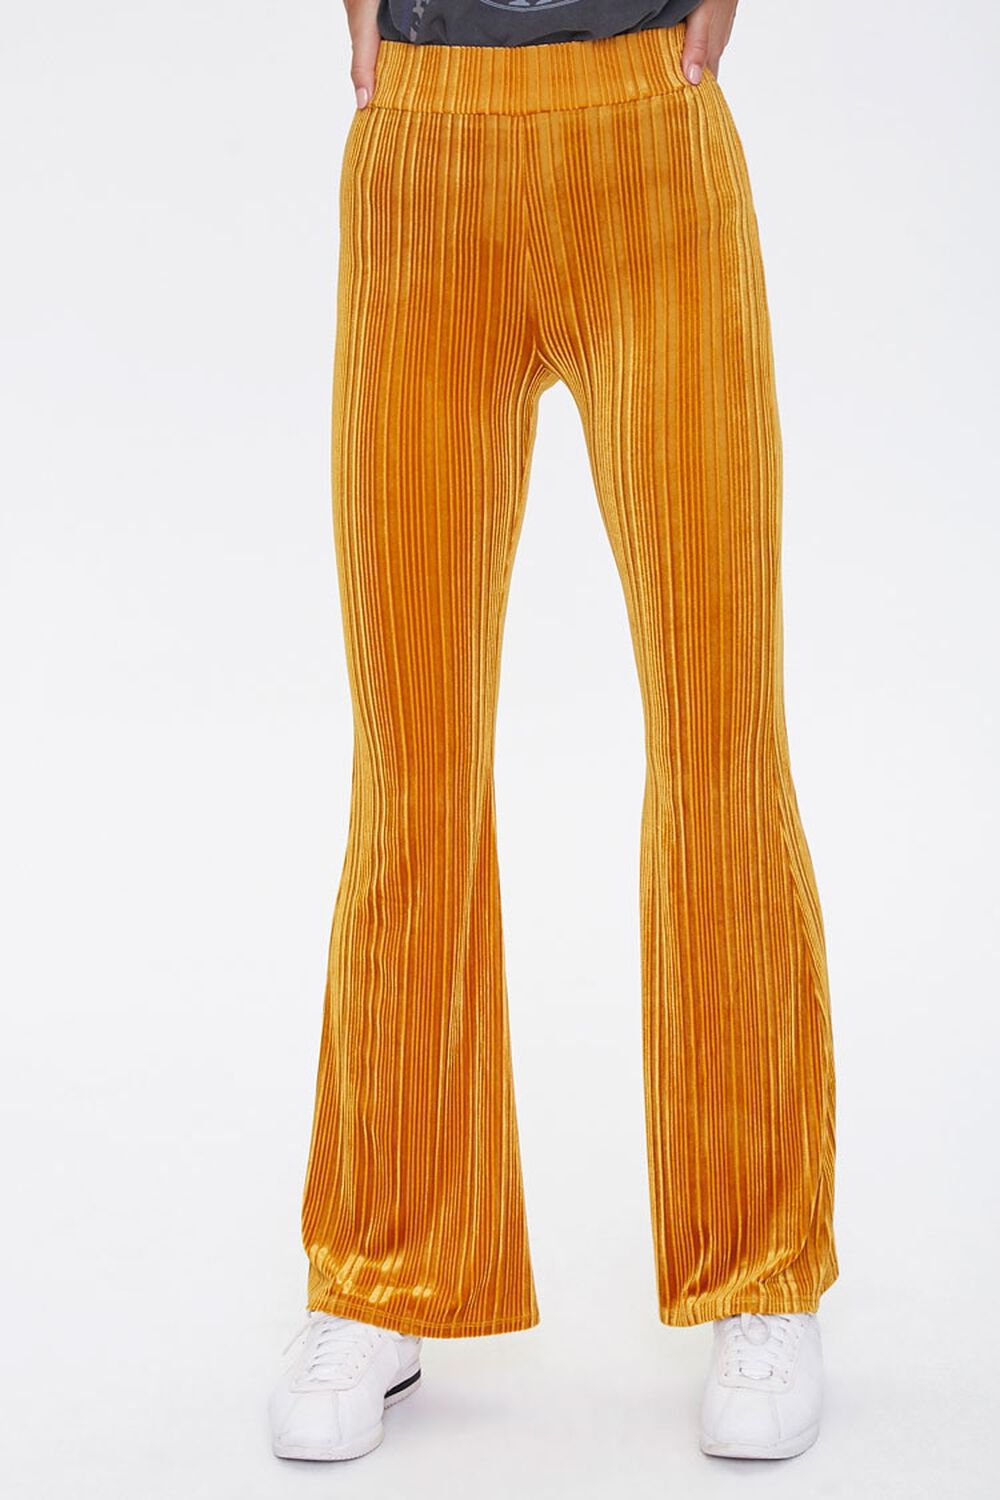 GOLD Velvet Flare Pants, image 2